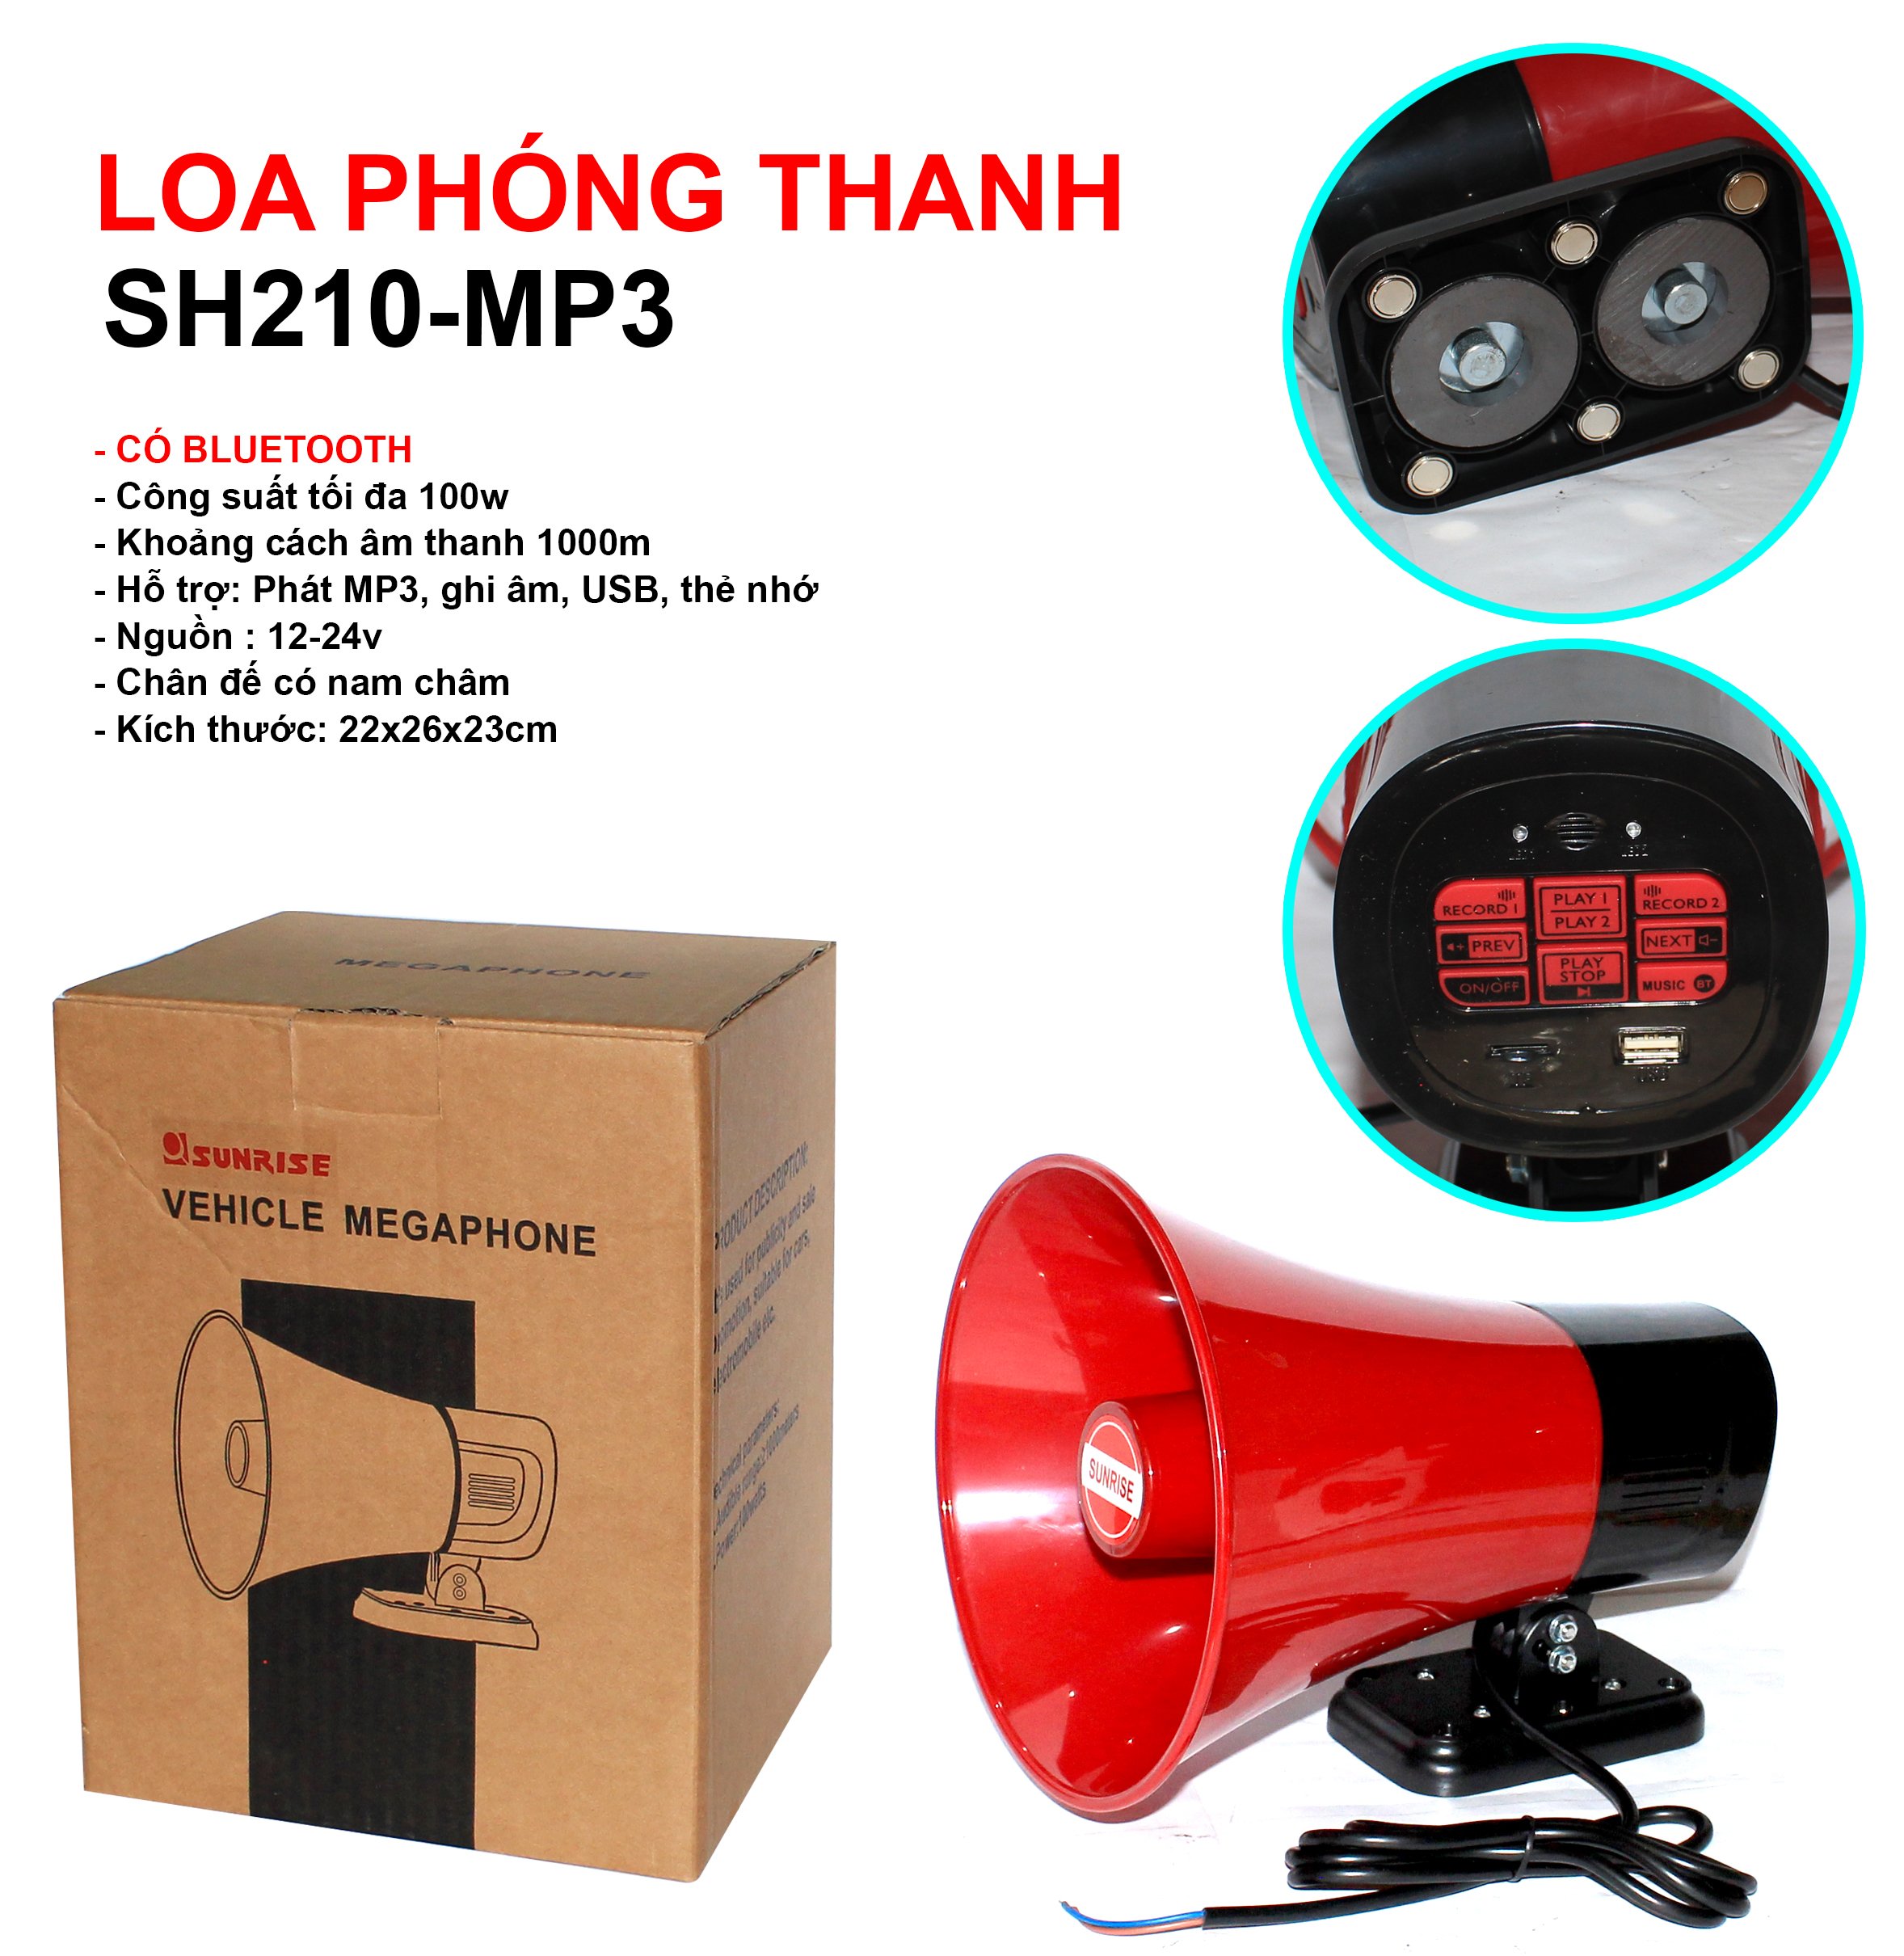 Loa phóng thanh chạy bình acquy 12v sunrise SH210-MP3 di động lắp xe máy rao bán hàng hiệu quả cao cống suất lớn 100W